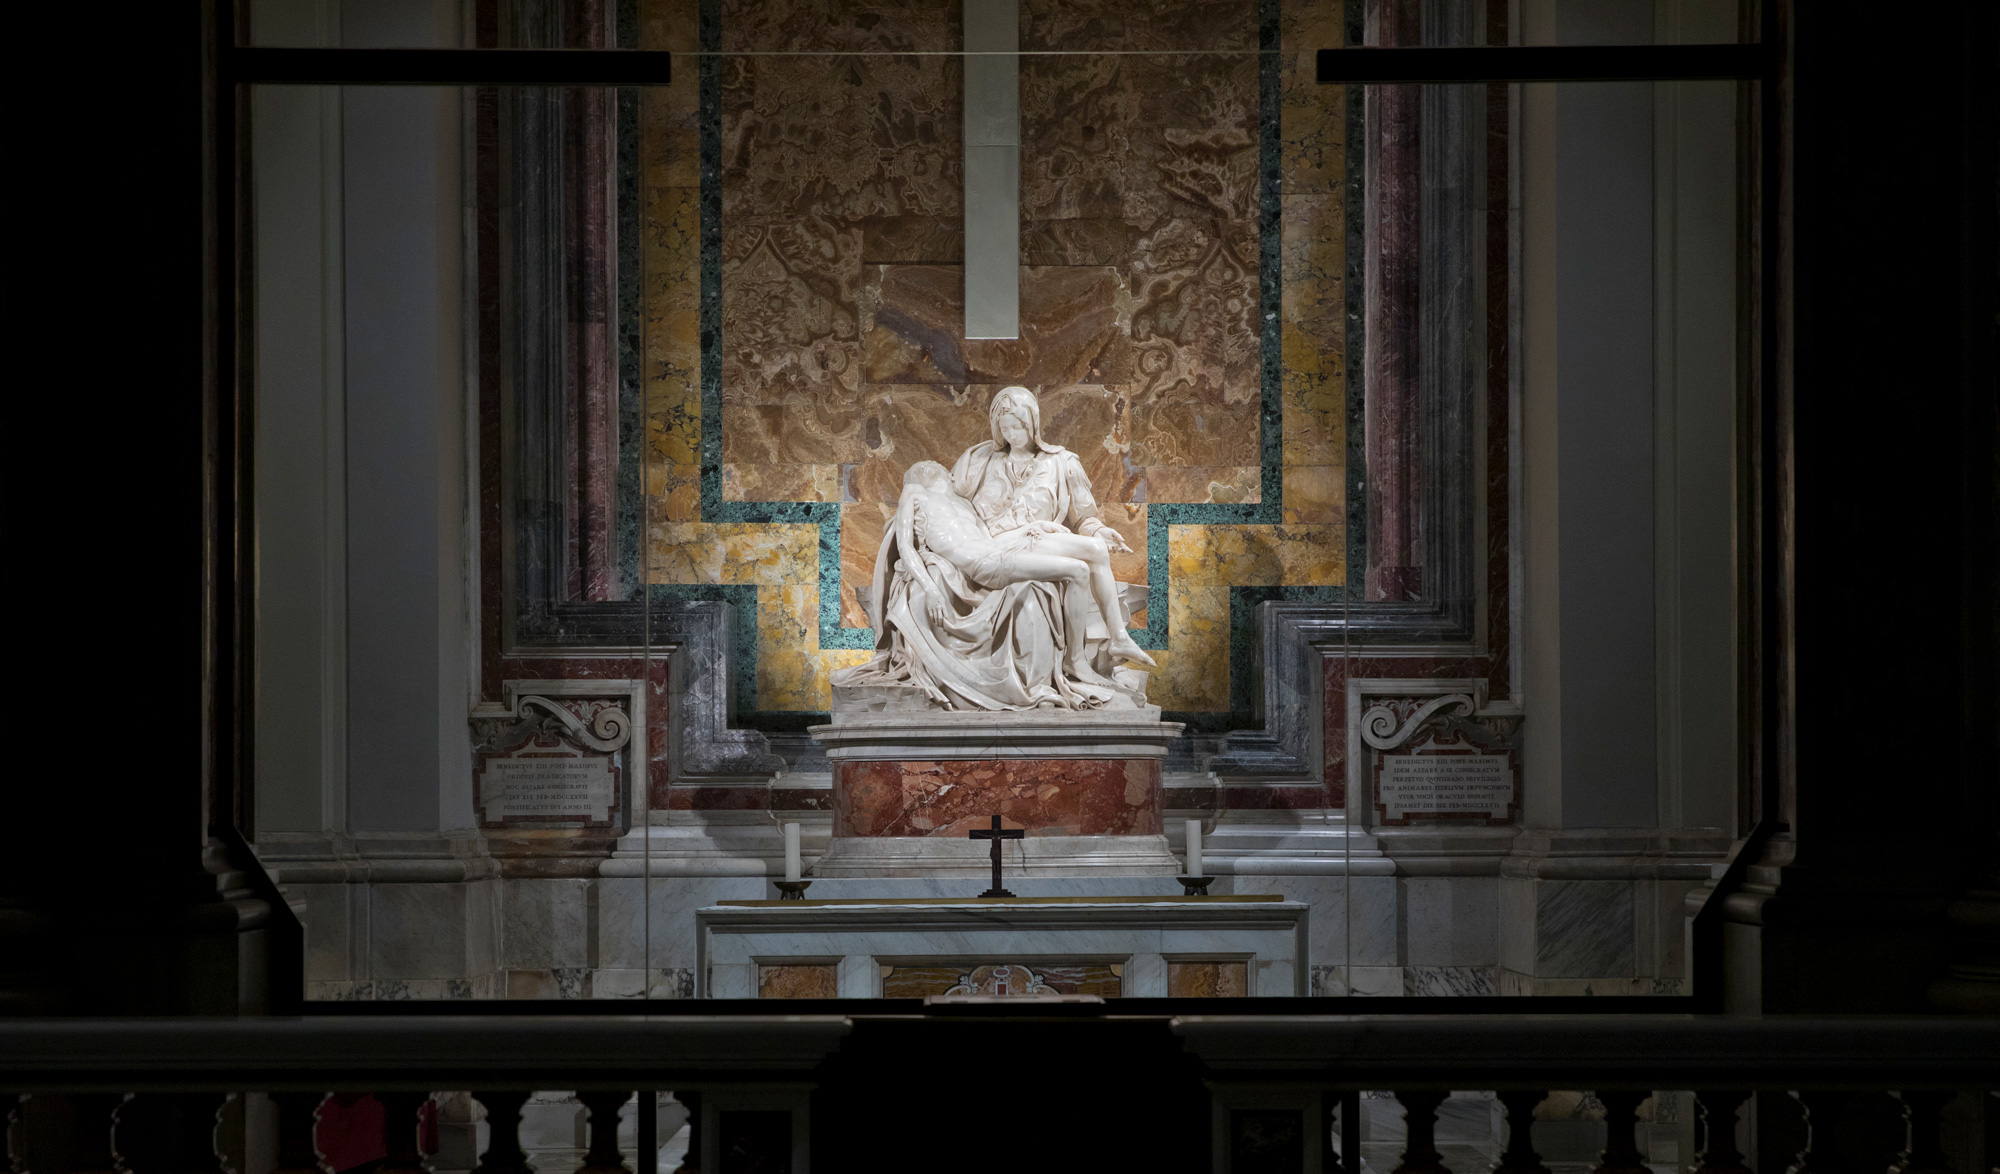  the Pietà in St. Peter’s Basilica